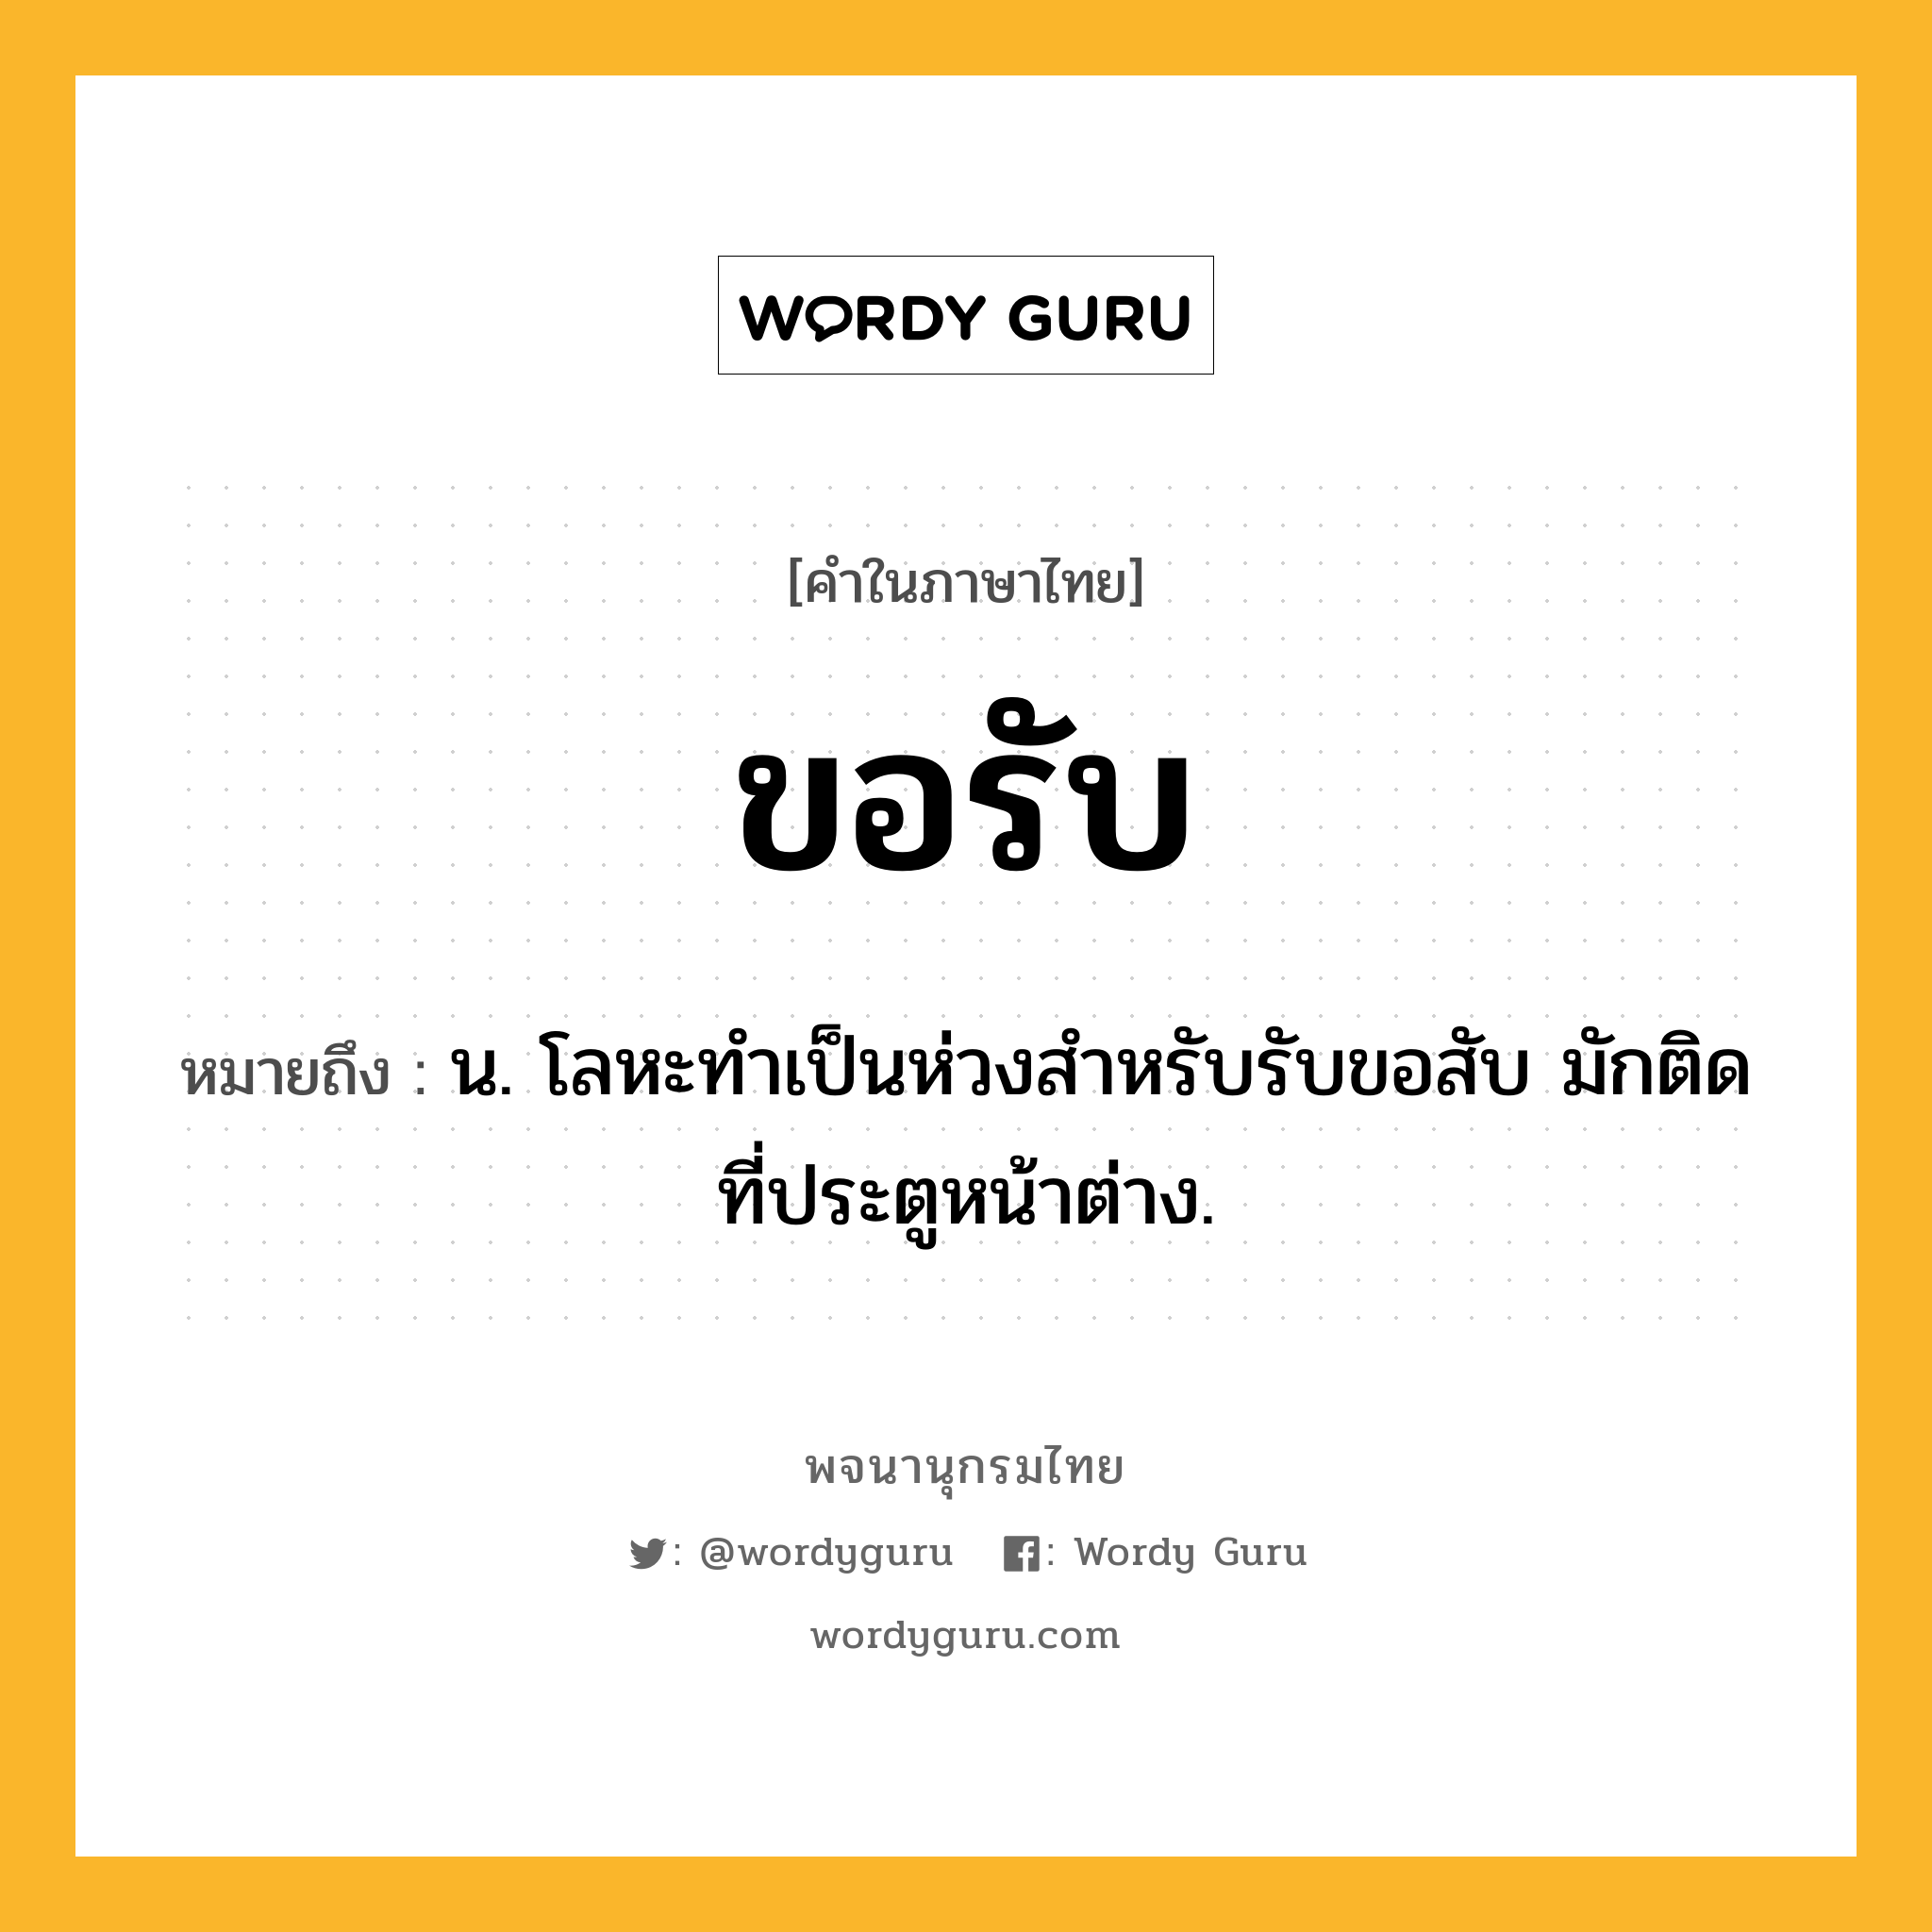 ขอรับ หมายถึงอะไร?, คำในภาษาไทย ขอรับ หมายถึง น. โลหะทําเป็นห่วงสําหรับรับขอสับ มักติดที่ประตูหน้าต่าง.